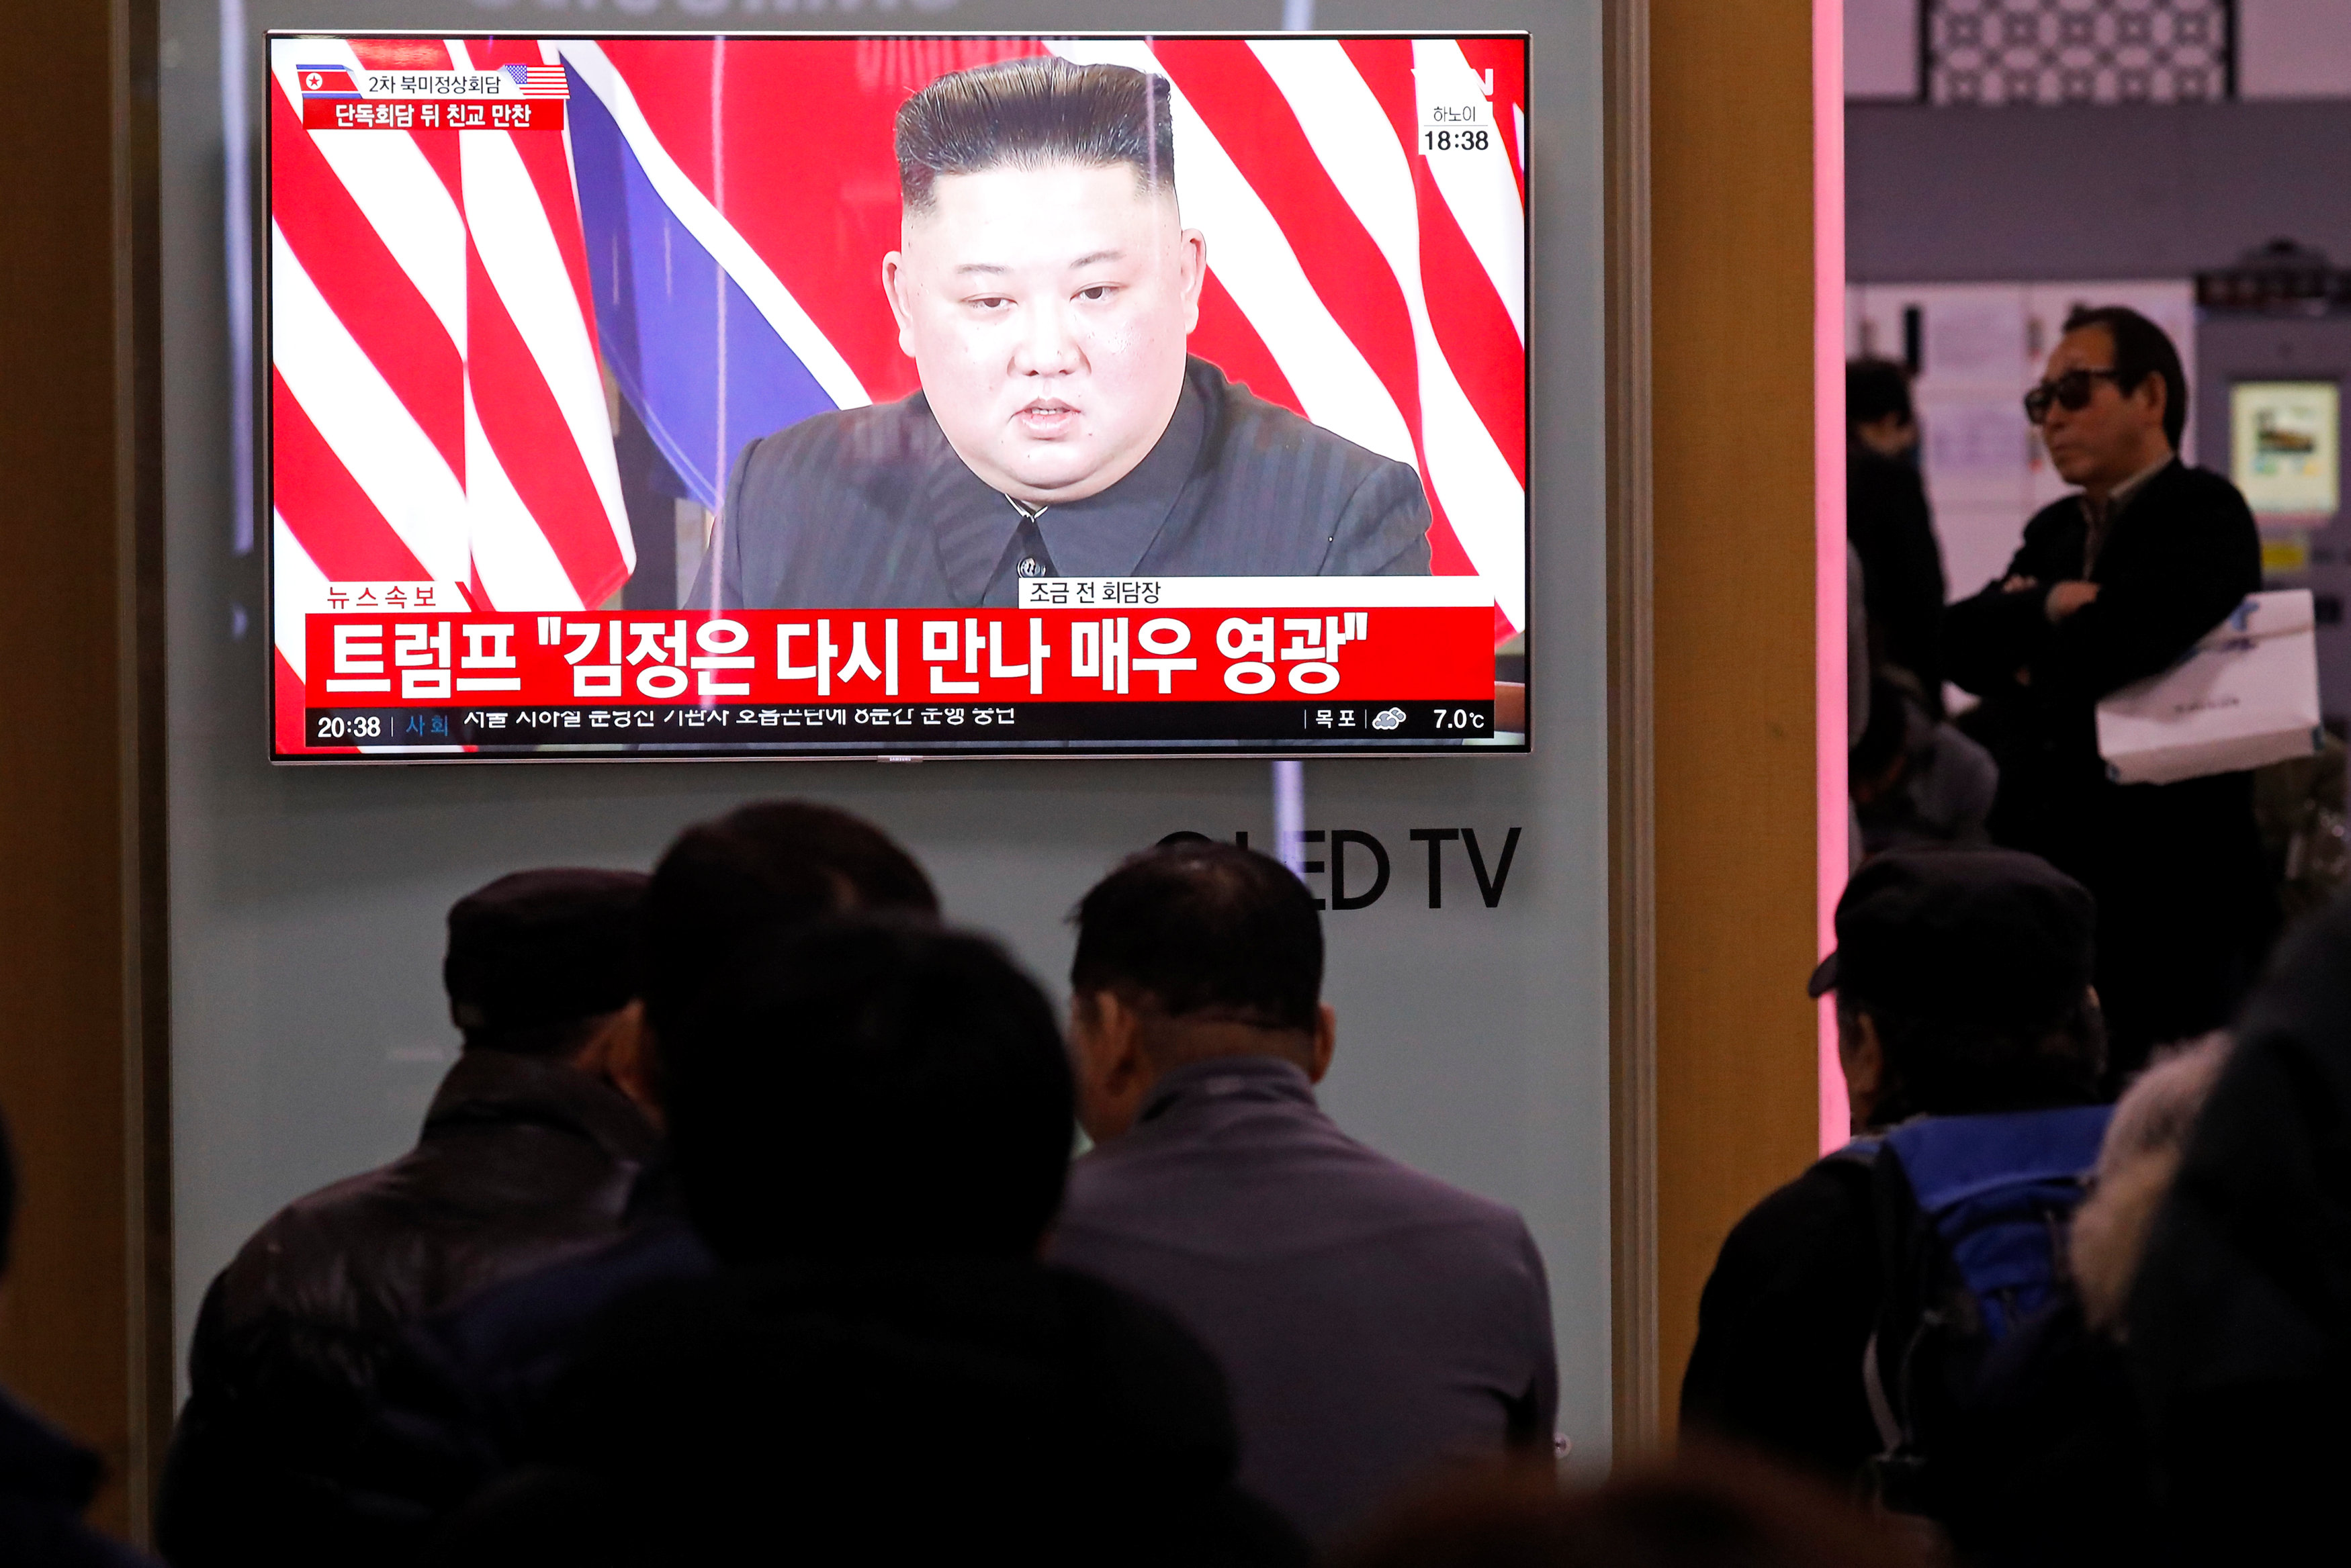 زعيم كوريا الشمالية يظهر على أحد الشاشات أثناء القمة